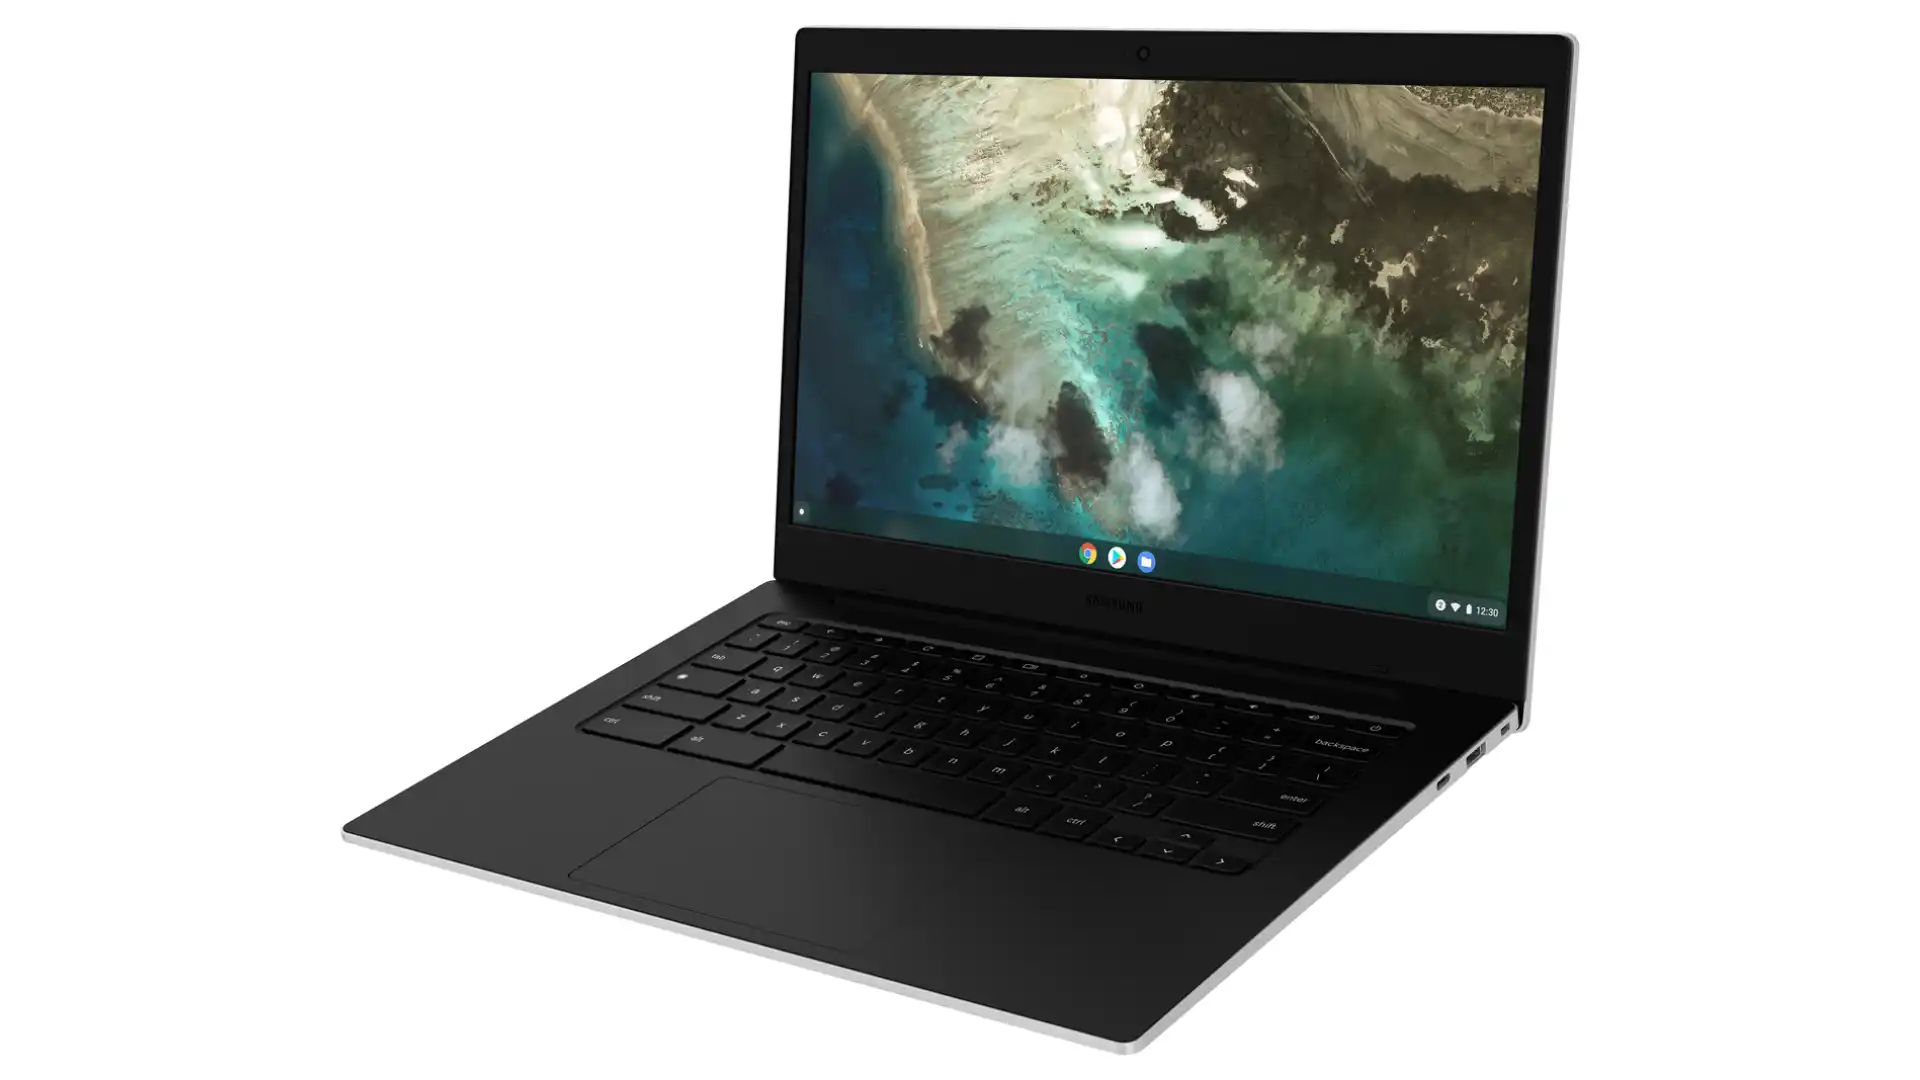 O Samsung Chromebook Go aparece aberto e um pouco virado para a esquerda, com seu interior preto em destaque e a tela mostrando como plano de fundo uma praia de águas azuis e cristalinas.